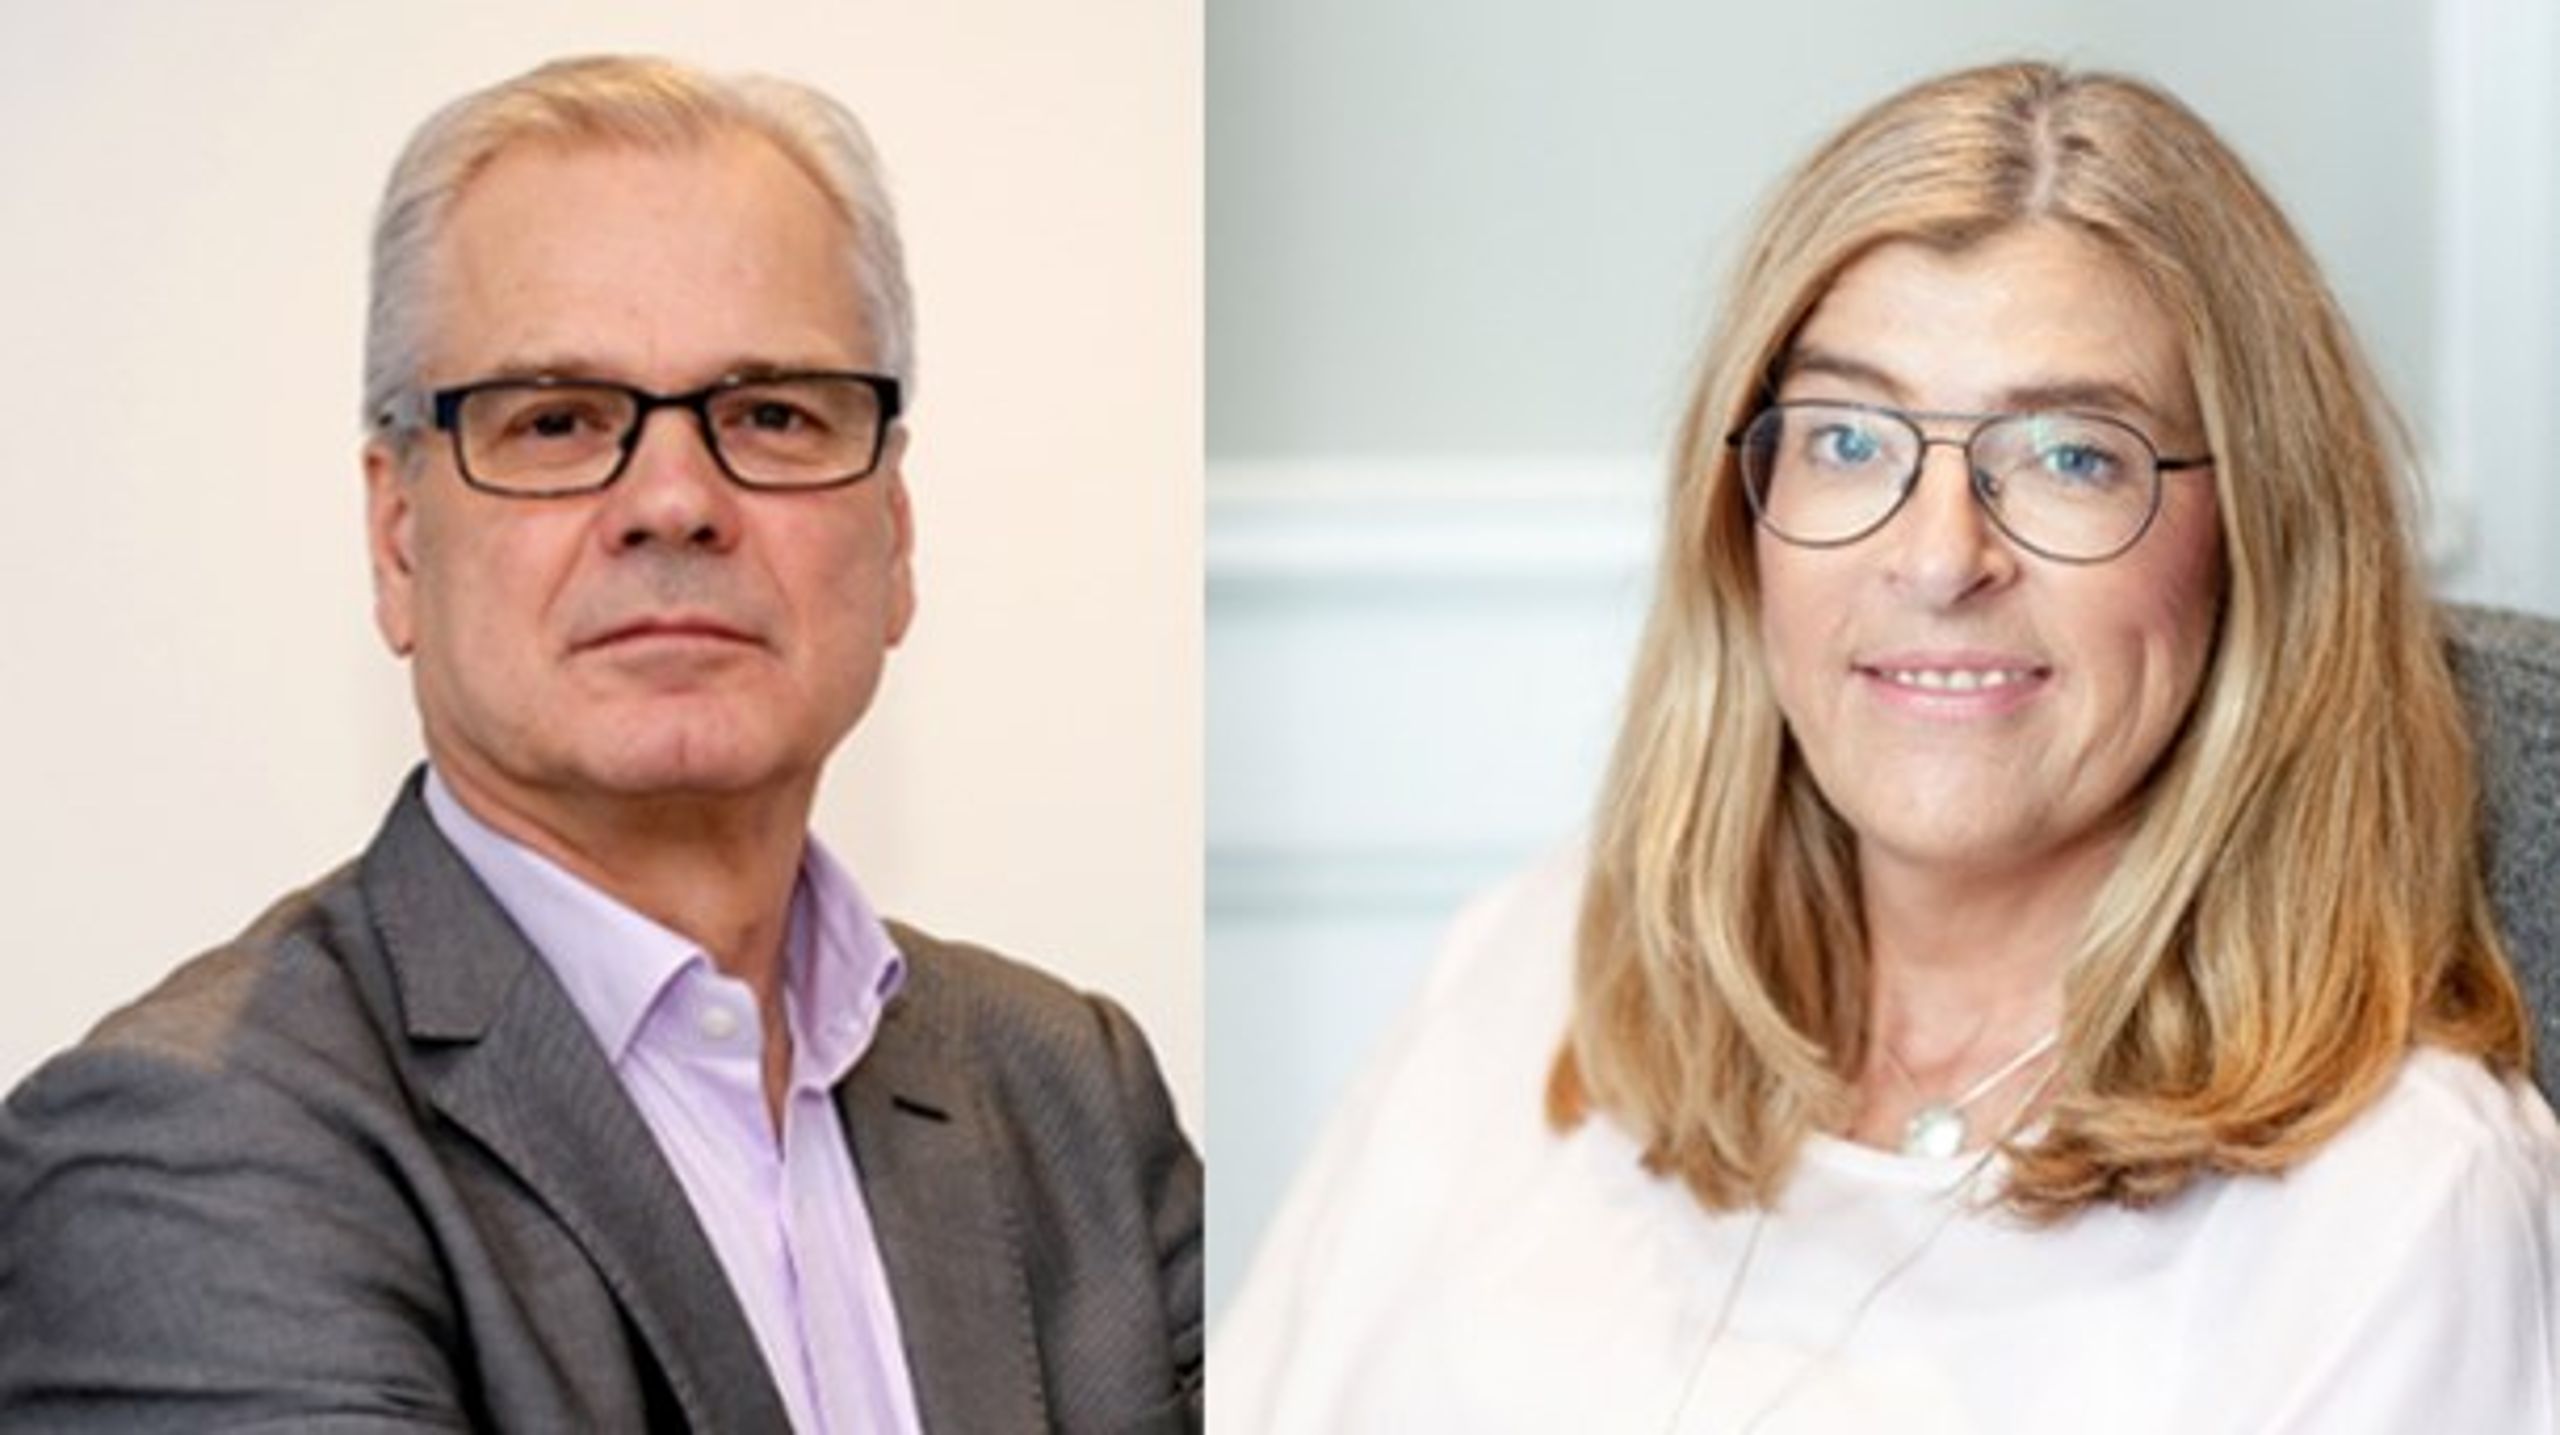 Almegas näringspolitiska chef Ulf Lindberg och LO:s förste vice ordförande Therese Gouvelin.